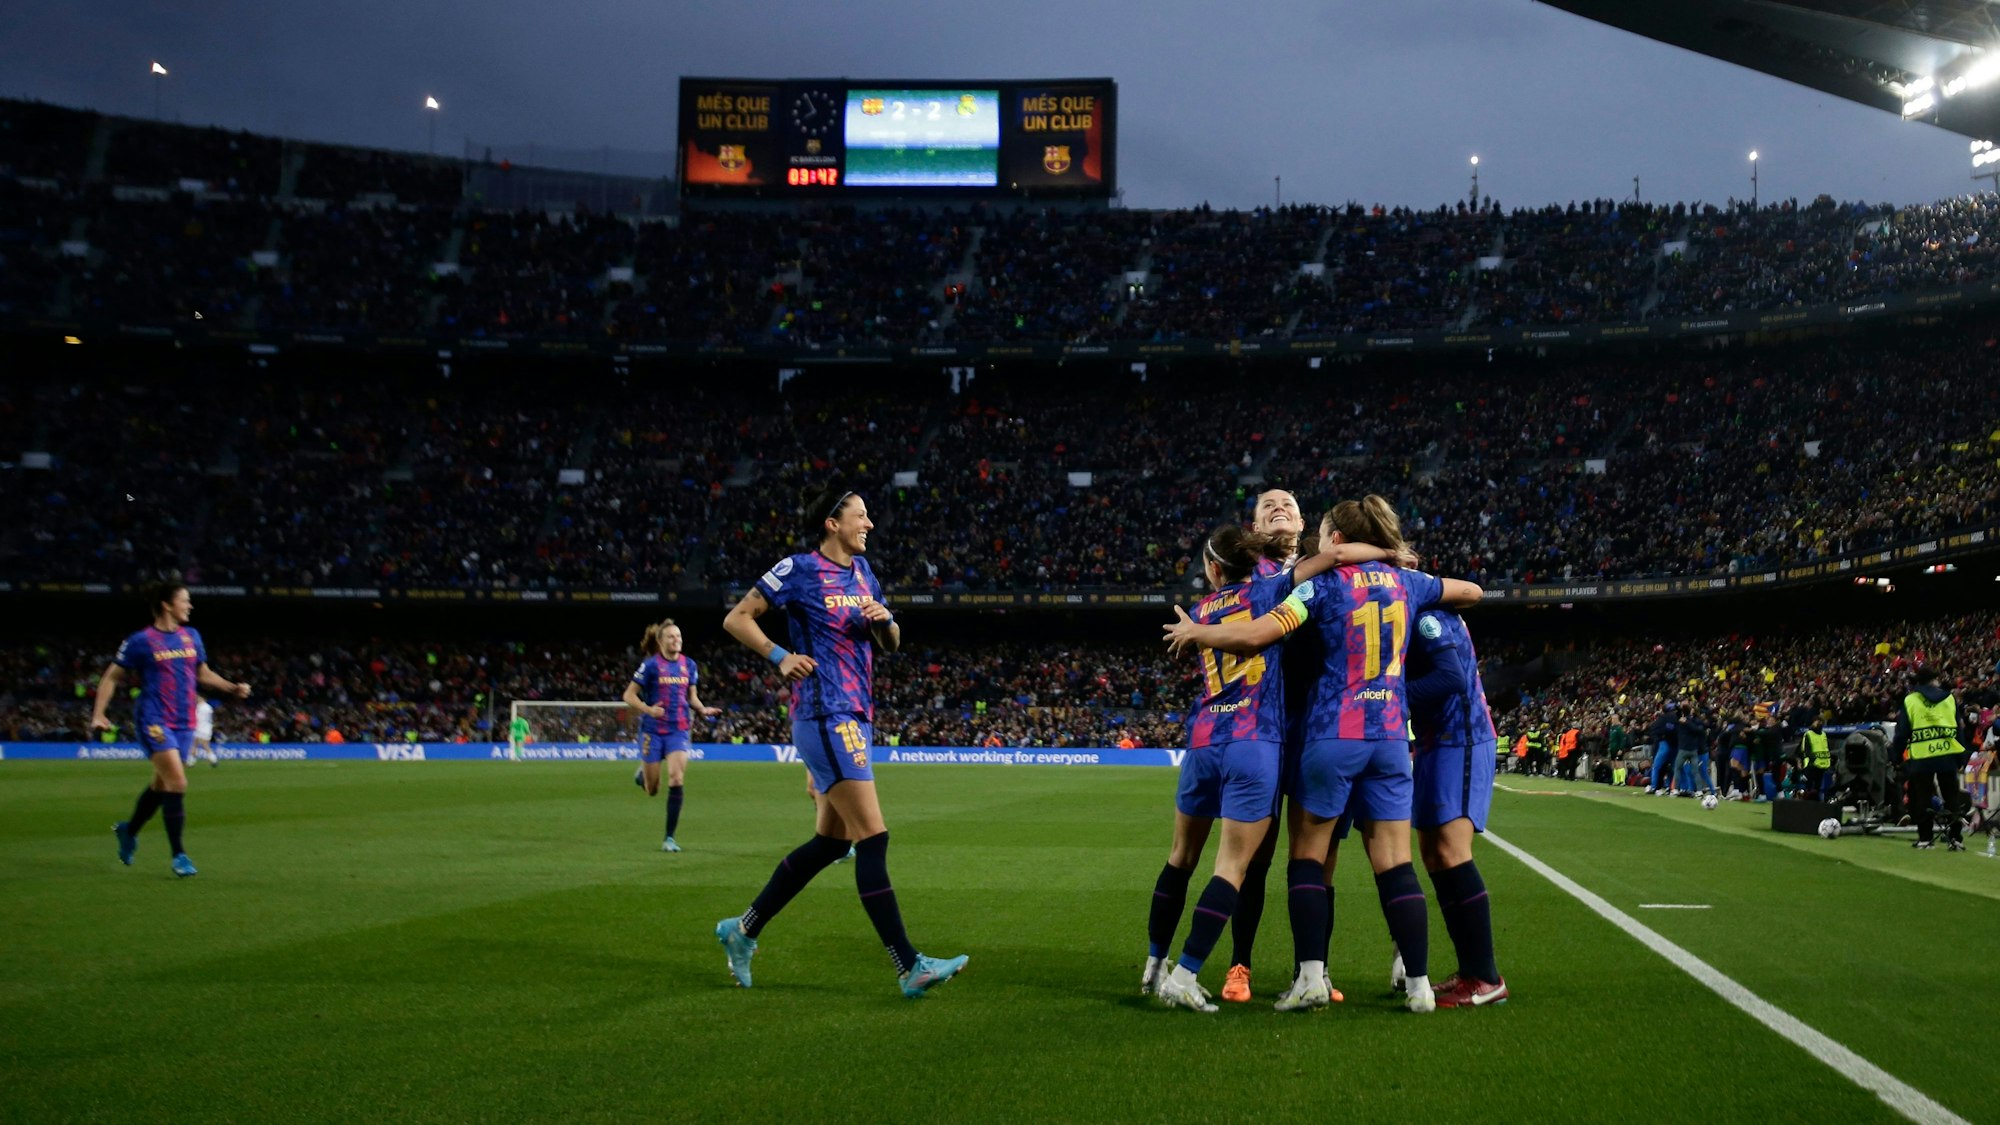 Die Spielerinnen des FC Barcelona bejubeln vor Rekord-Kulisse ein Tor im Viertelfinale der Champions League gegen Real Madrid.